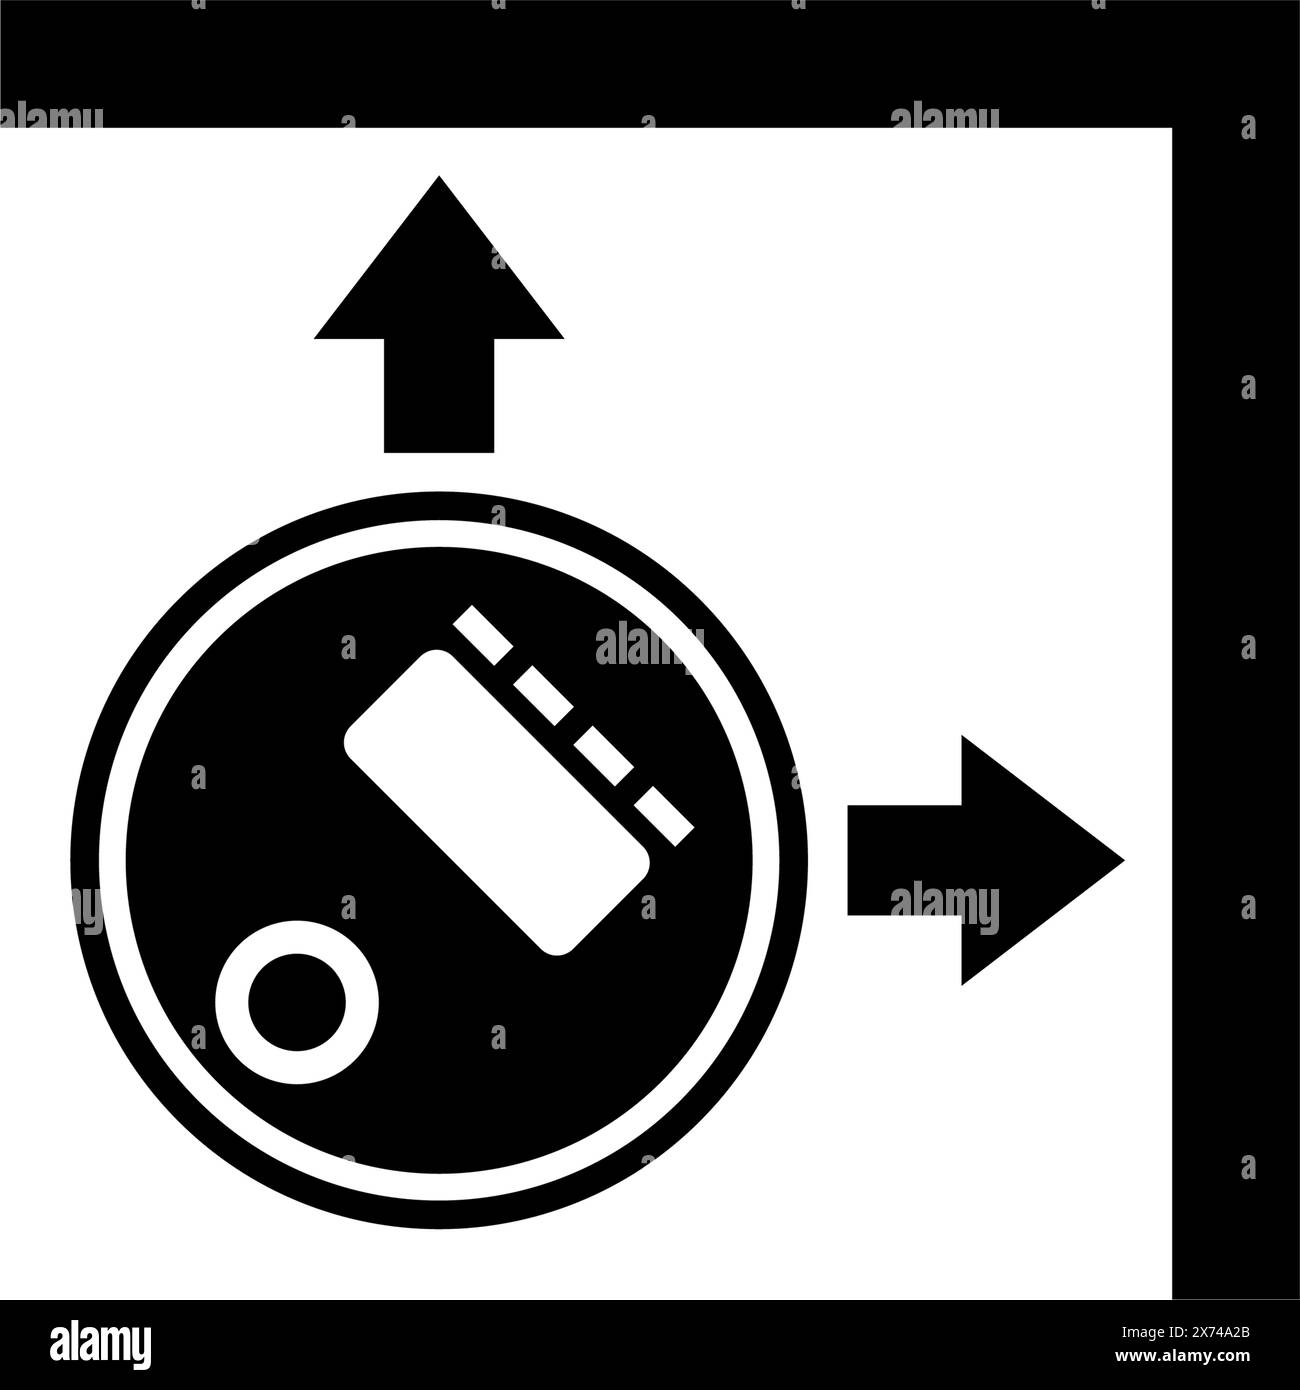 Rappresentazione grafica di un aspirapolvere robot in movimento in un angolo, che ne illustra la capacità di manovra in spazi ristretti Illustrazione Vettoriale